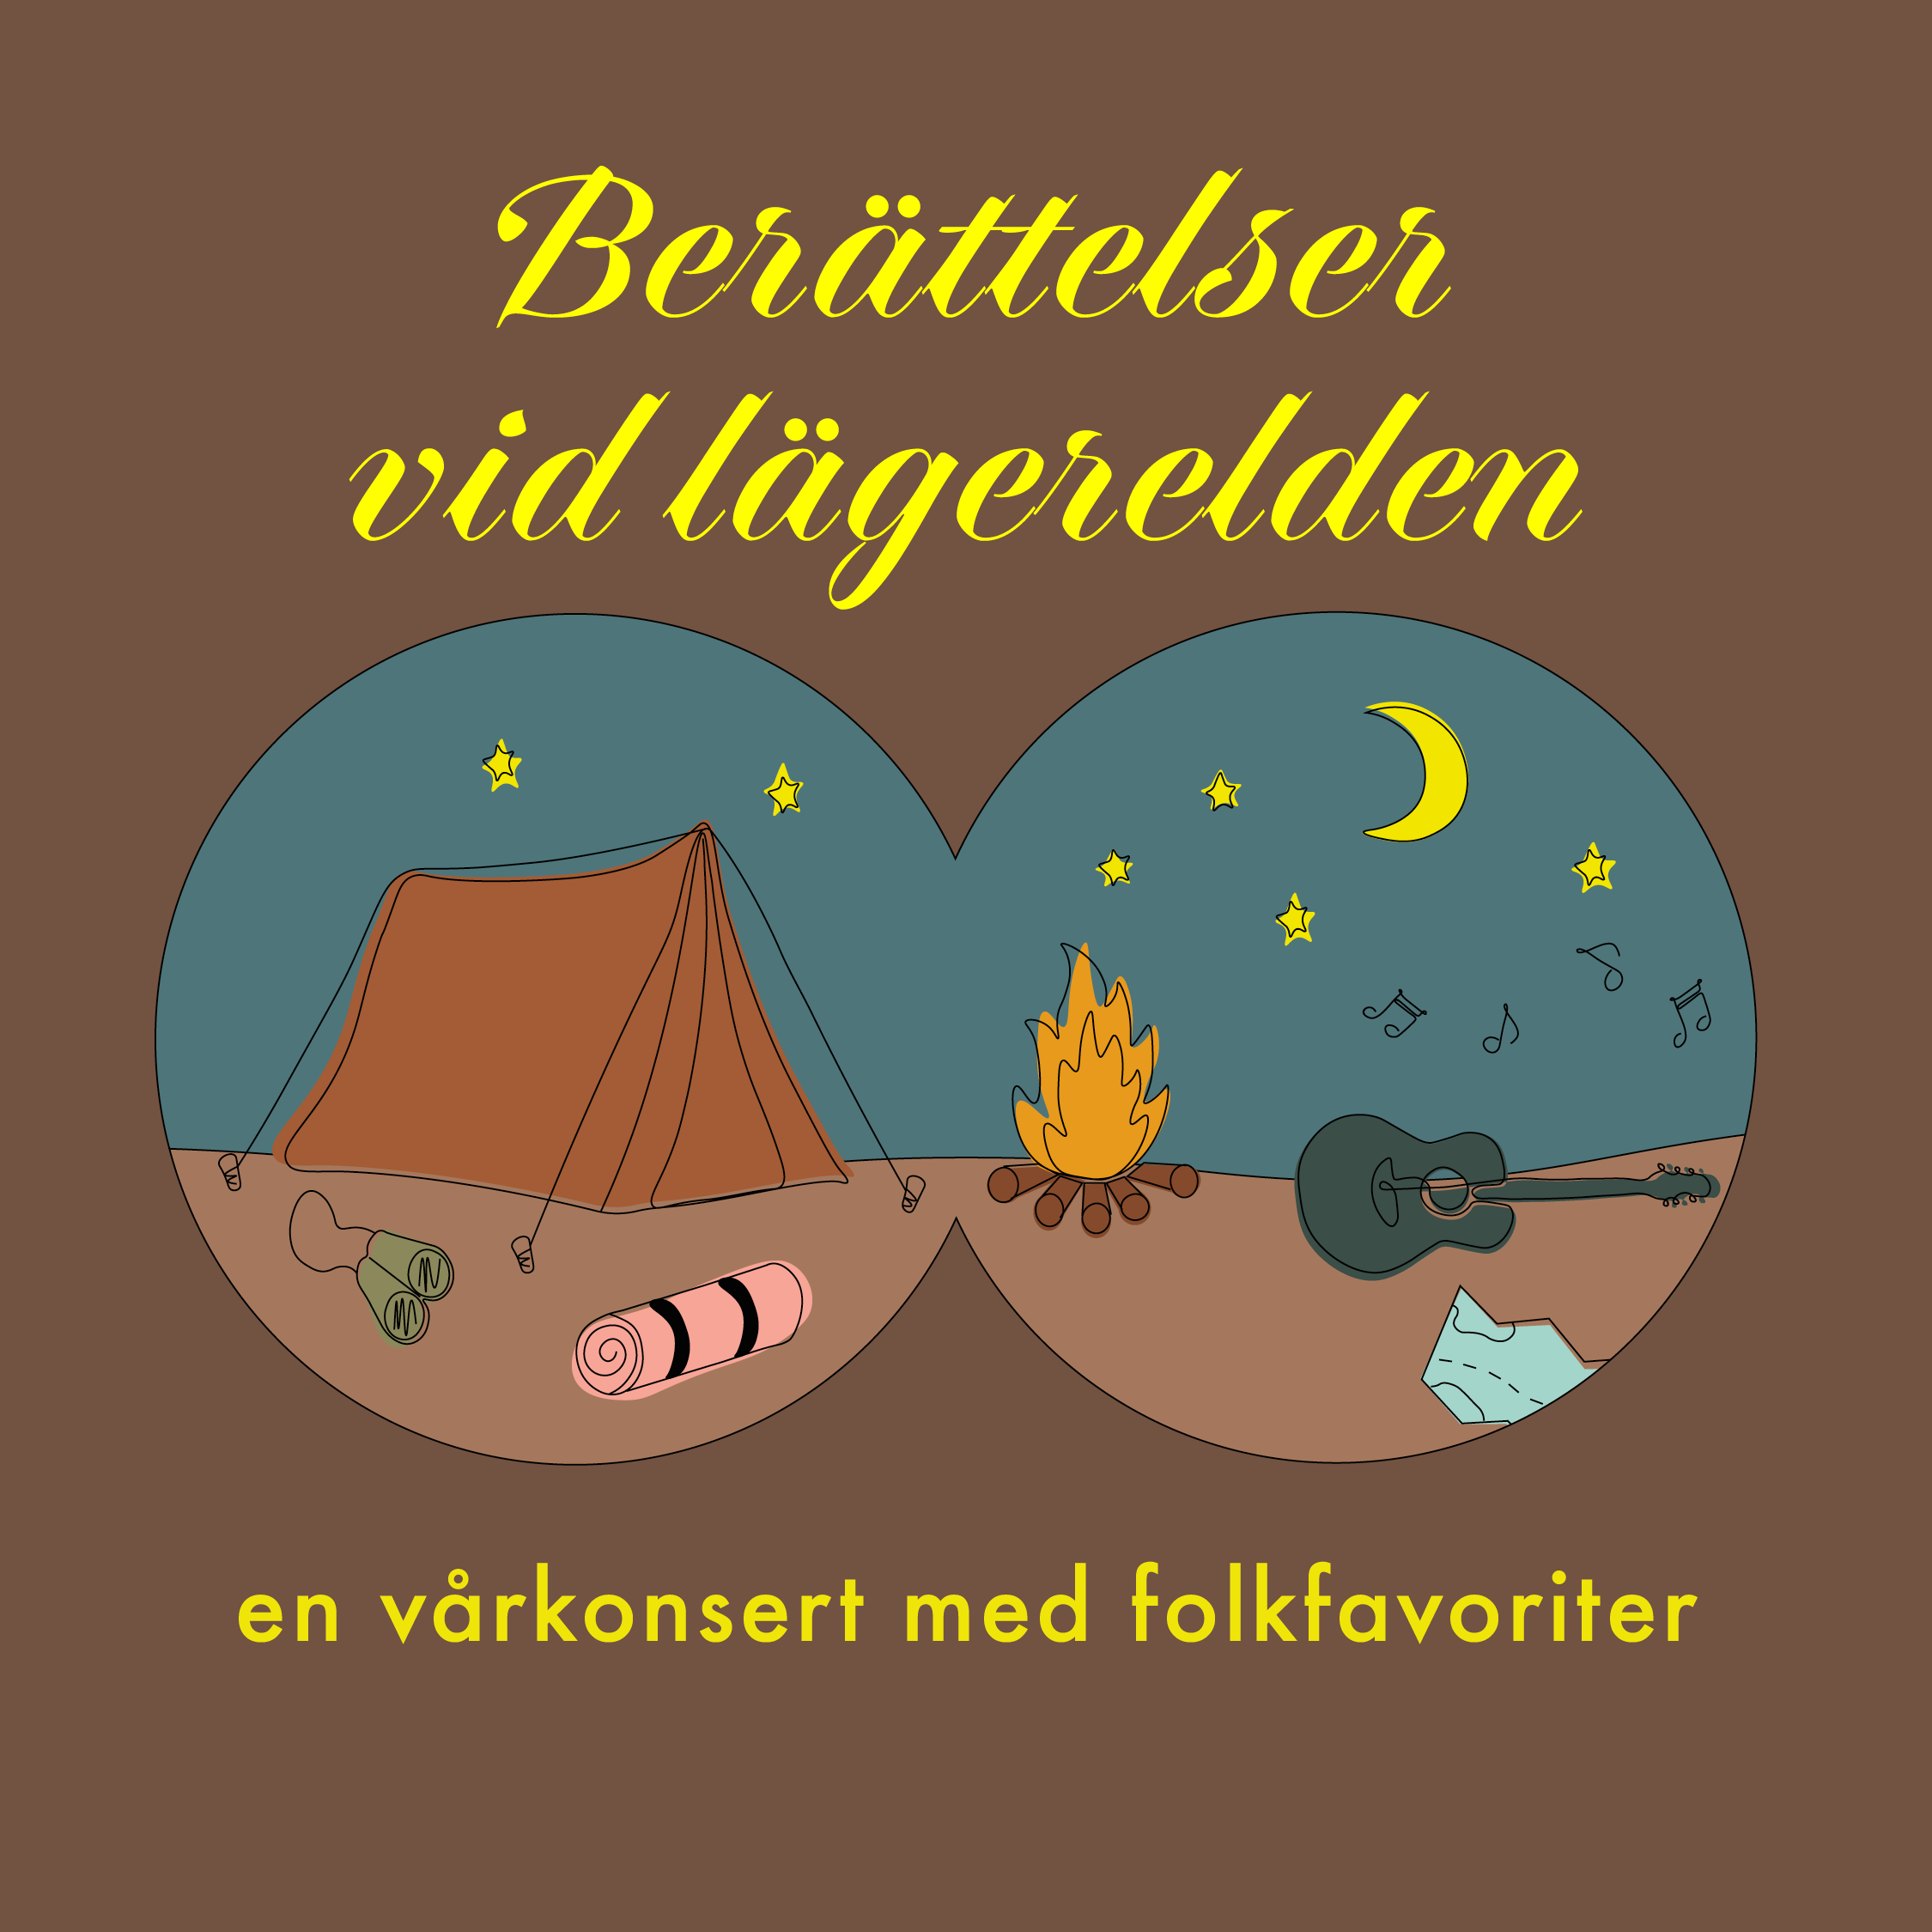 En illustration genom en kikare föreställande en stjärnklar natt med ett tält, lägereld och gitarr. Runt illustrationen står texten "Berättelser vid lägerelden – en vårkonsert med folkfavoriter".